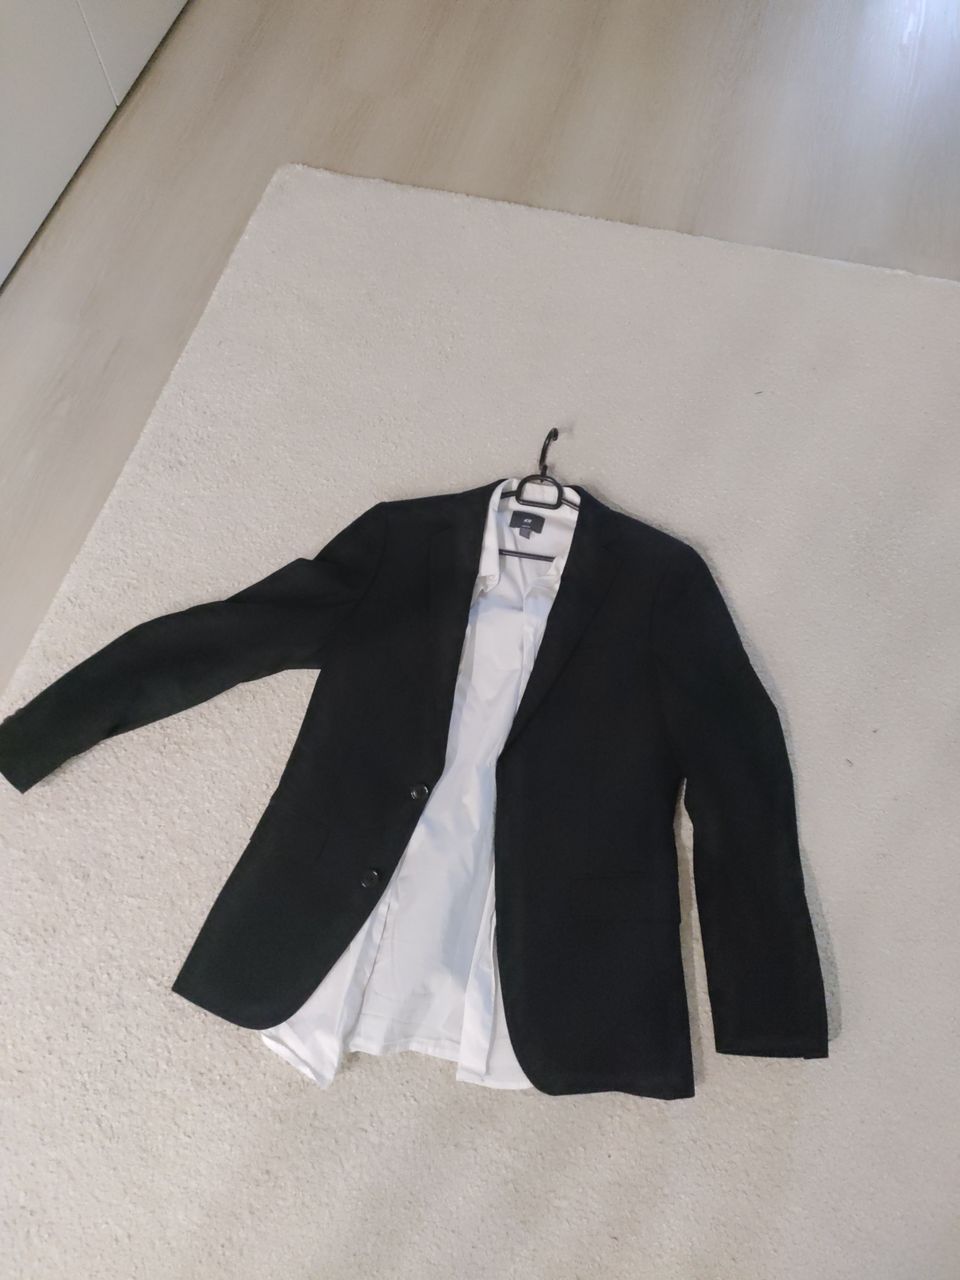 Musta puvun takki ja paita